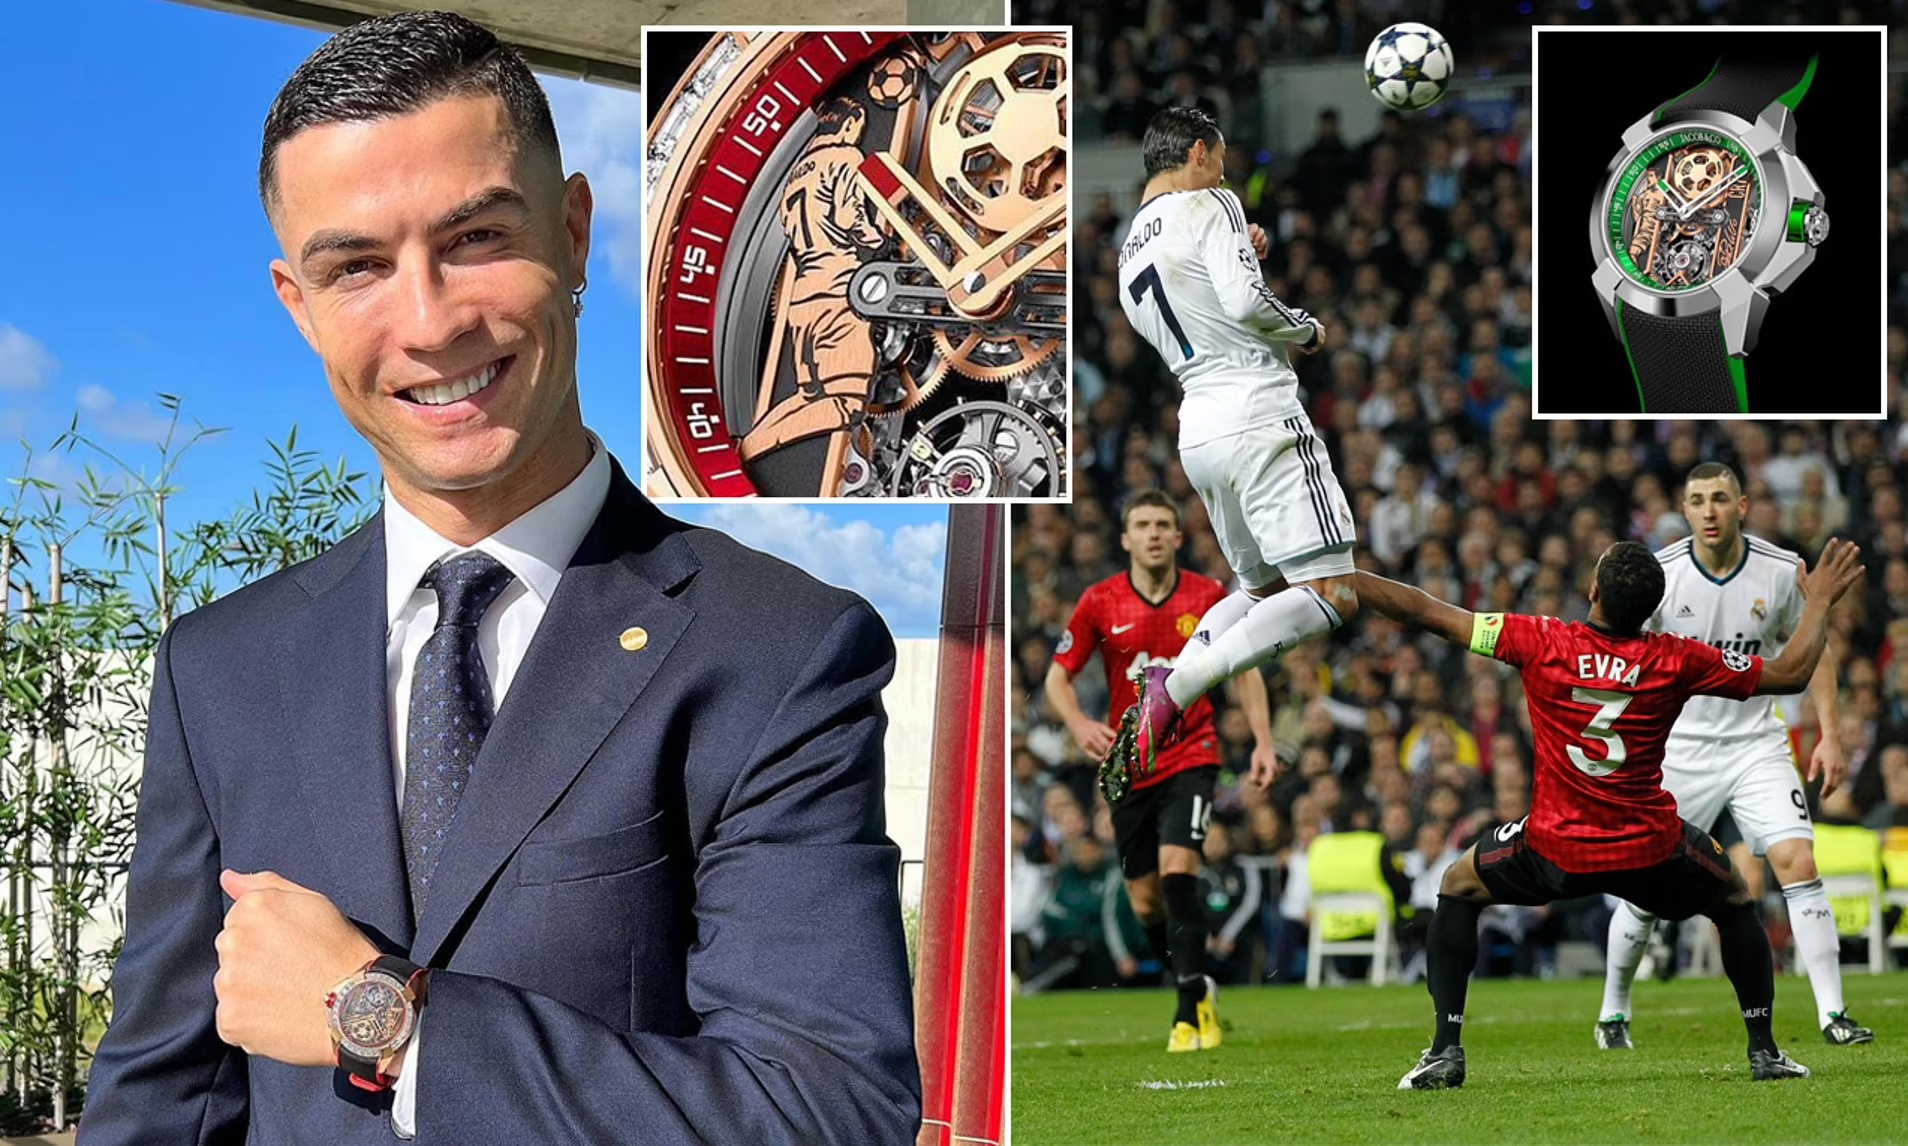 MU, Ronaldo, đồng hồ: Xem hình ảnh Cristiano Ronaldo đeo chiếc đồng hồ cực chất trên cổ tay và nghía mắt ngắm chiếc giải UEFA Champions League đã đưa anh trở thành ngôi sao bóng đá nổi tiếng.